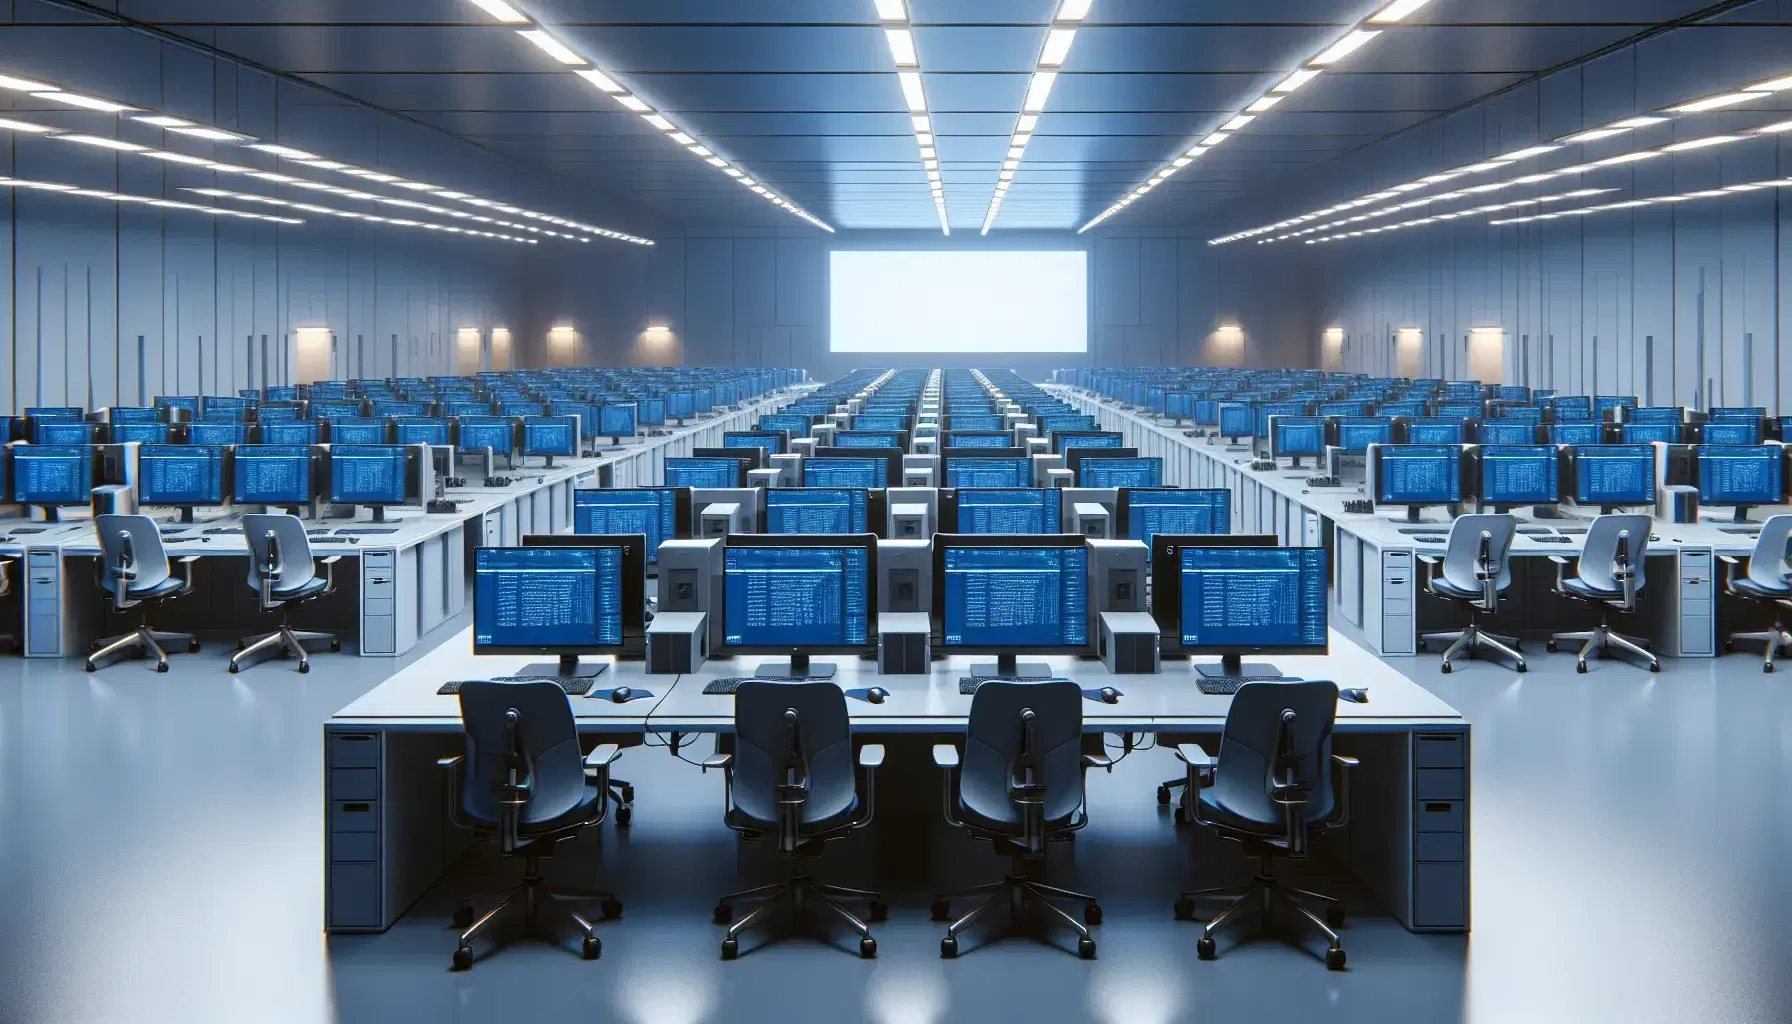 Sala de informática con filas de mesas y ordenadores de escritorio encendidos, sillas ergonómicas y personas trabajando en un entorno iluminado.